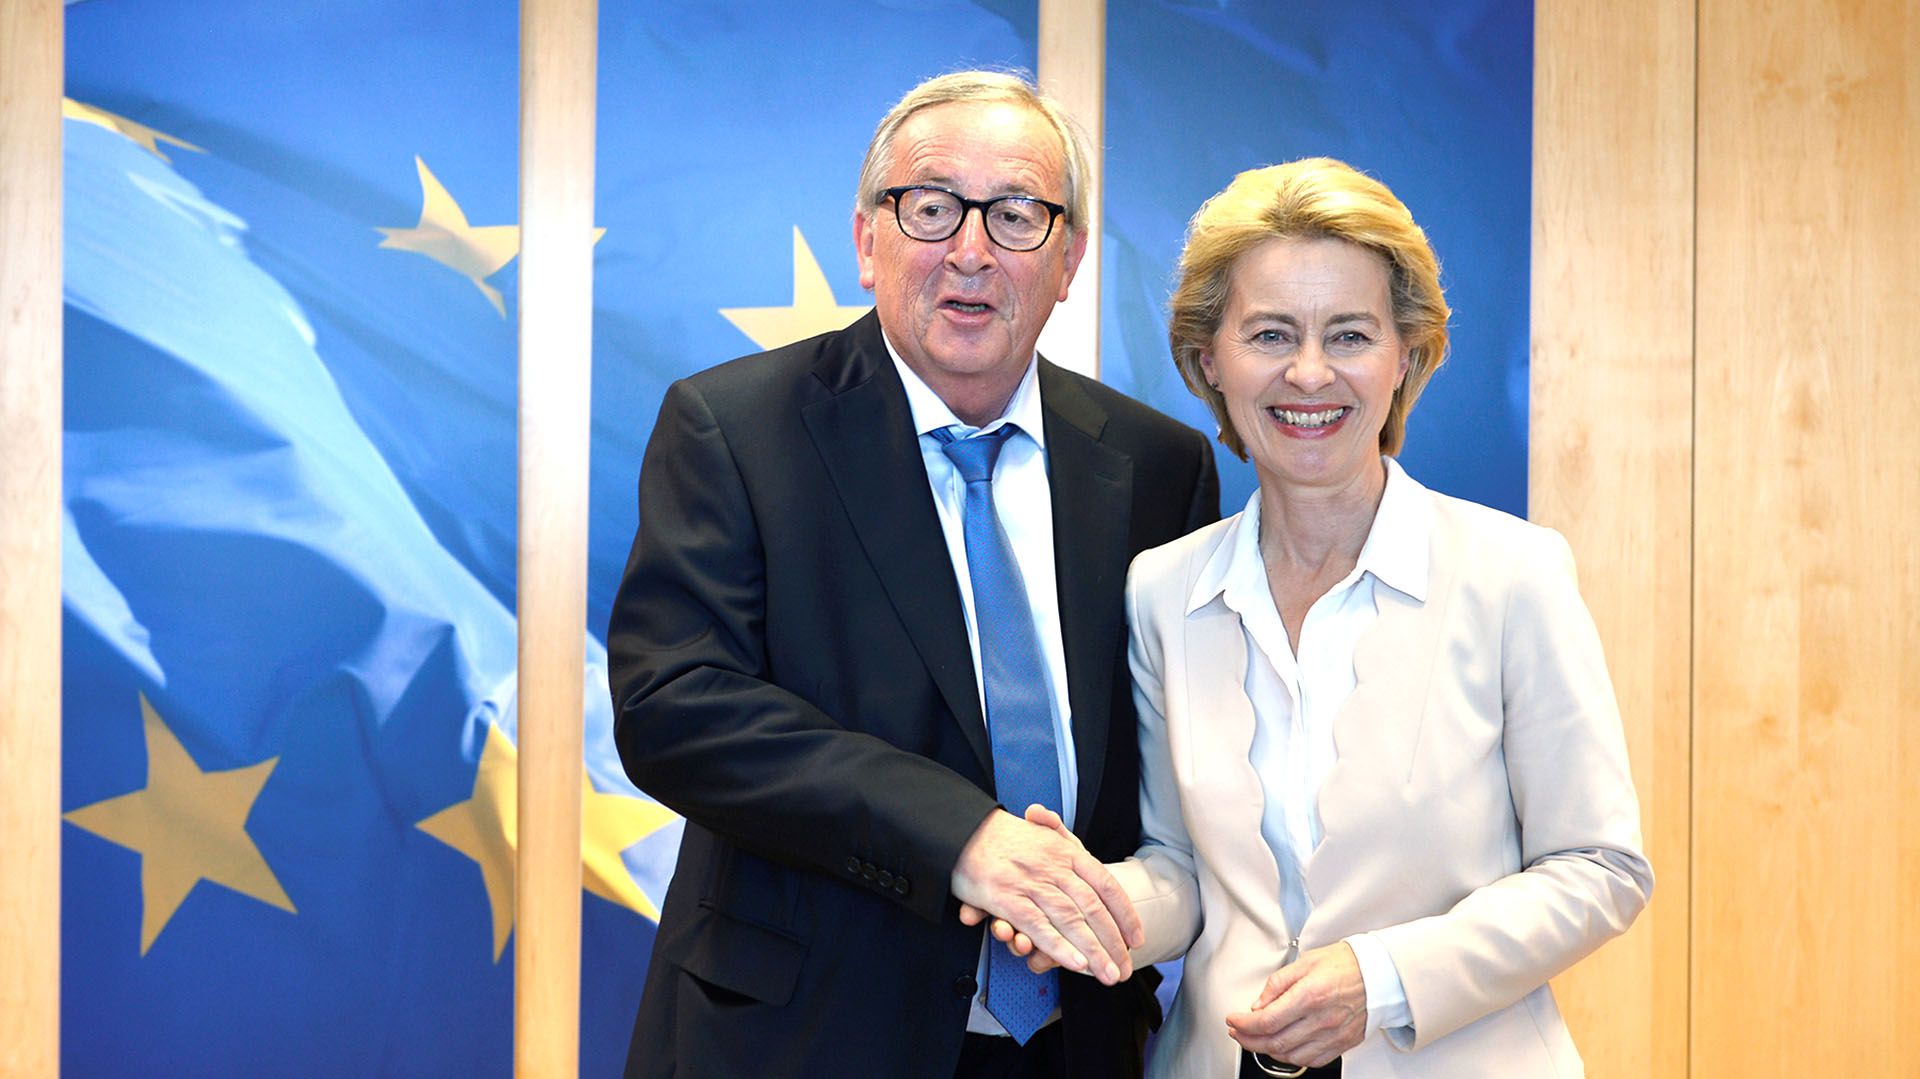 El Presidente de la Comisión europea, Jean-Claude Juncker, posa con quien lo sucederá en el cargo a partir de noviembre, Ursula von der Leyen, en Bruselas, Bélgica, el 23 de julio de 2019 (REUTERS/Johanna Geron)